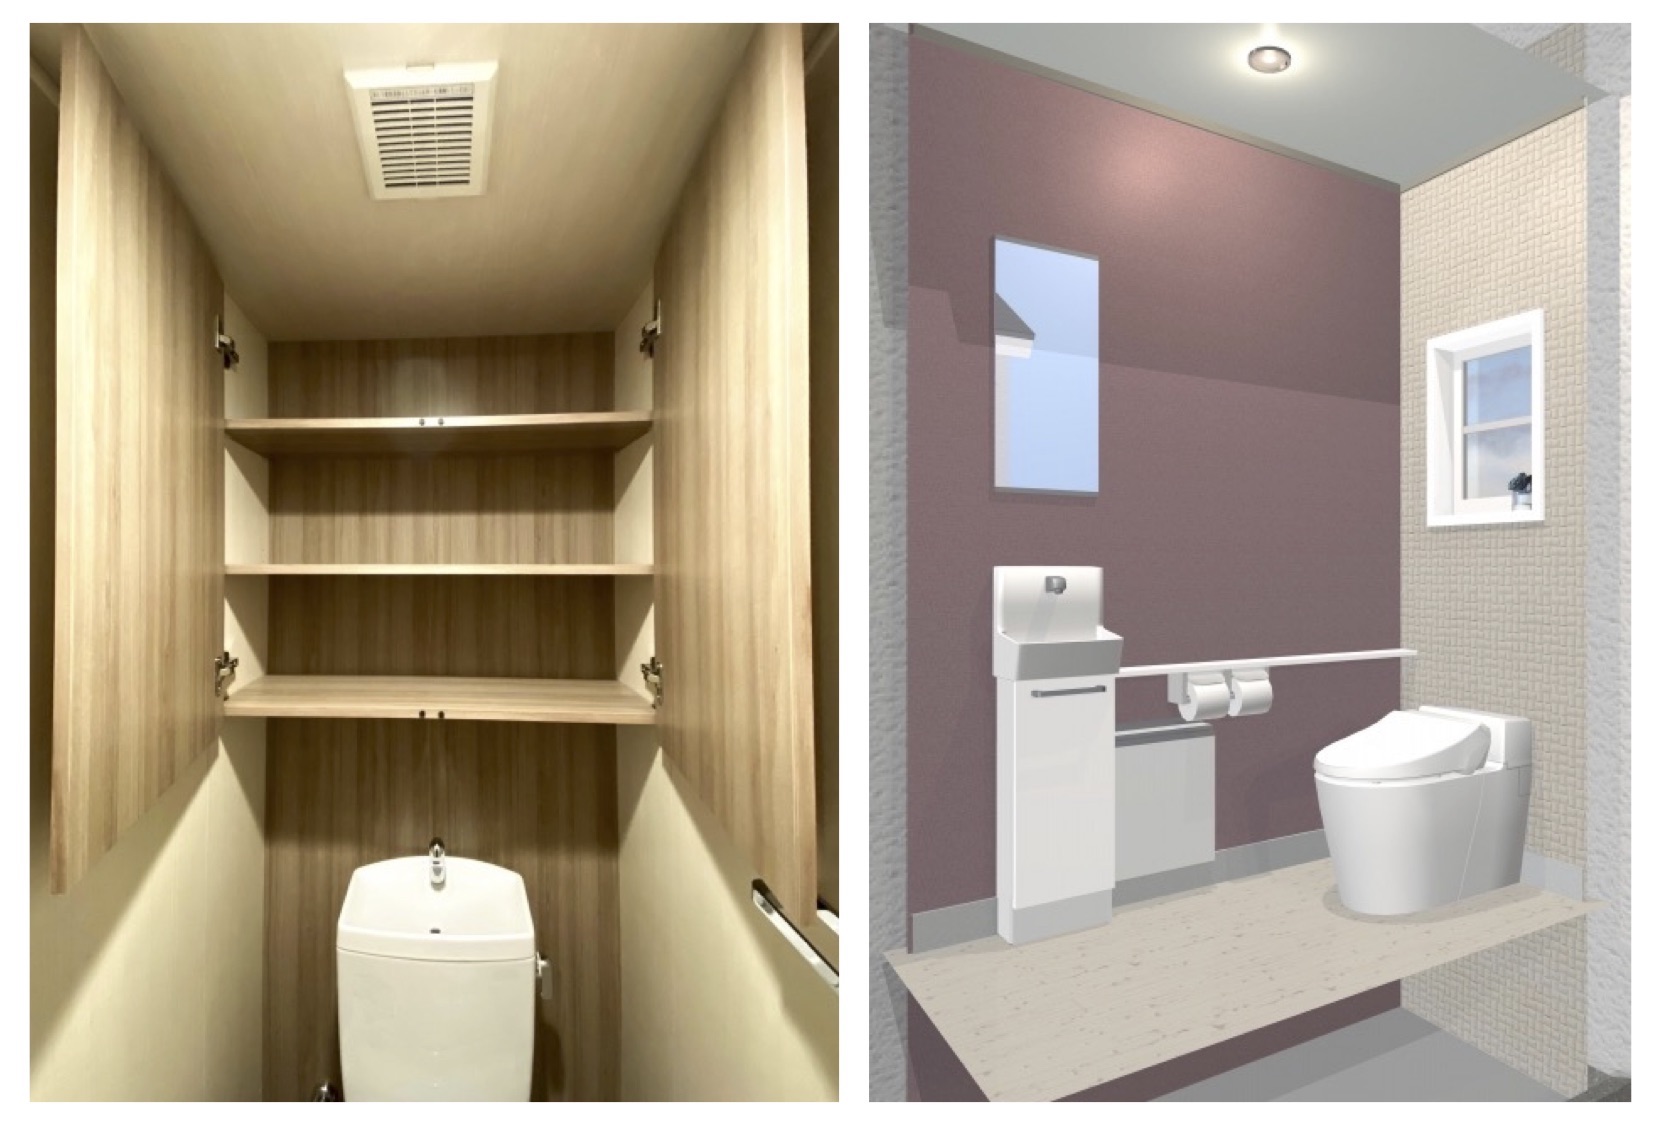 トイレは天井クロスで印象が変わる おしゃれな空間にするための選び方とは クレリノ